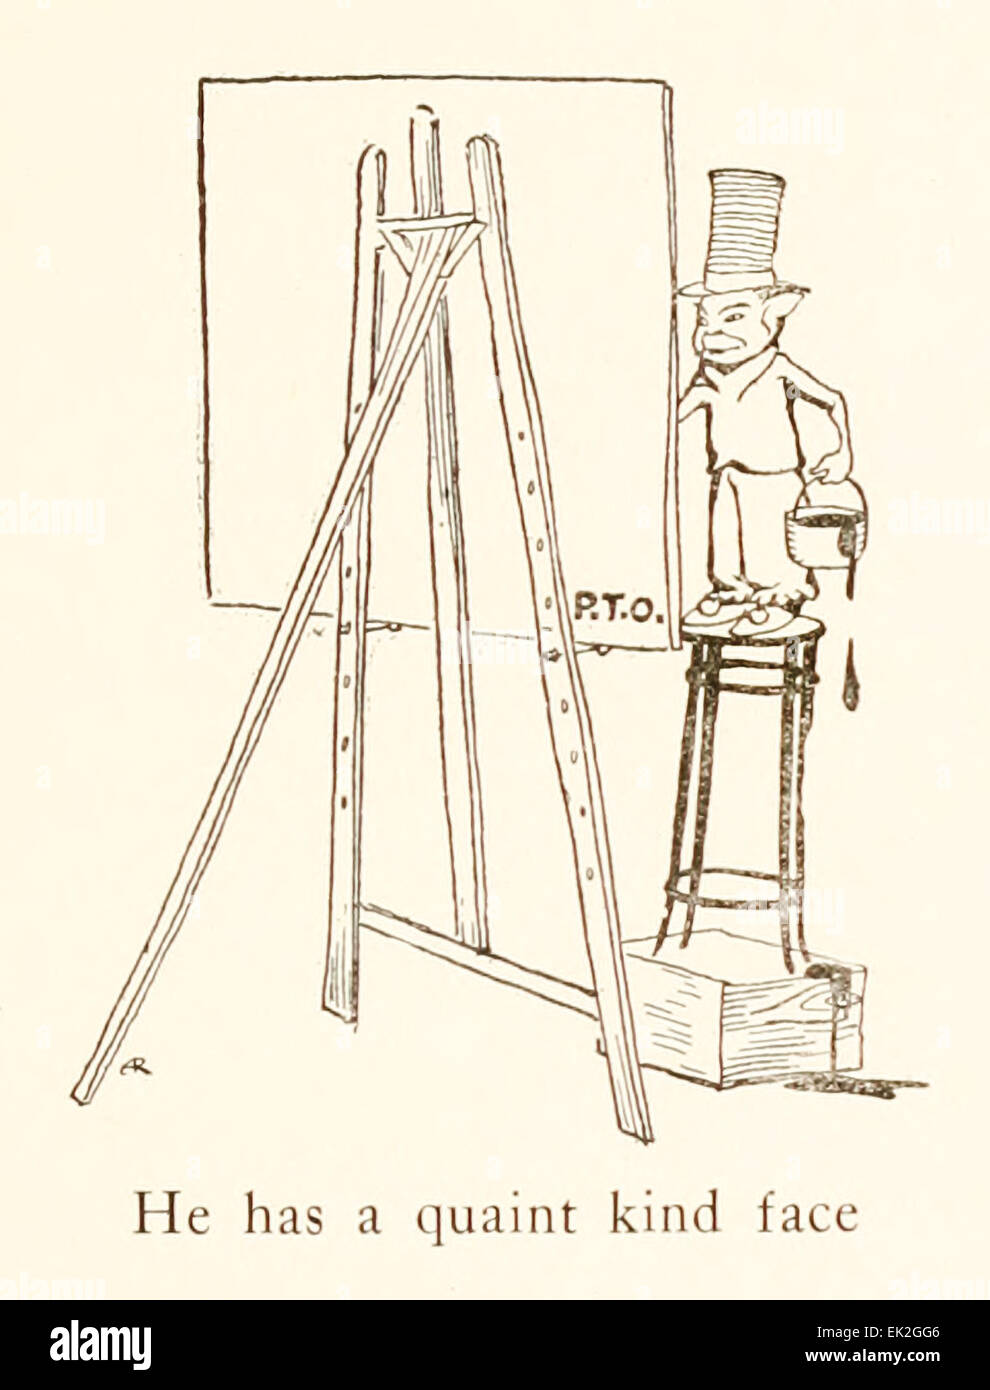 Egli aveva un caratteristico tipo face - Illustrazione di Arthur Rackham (1867-1939) da 'Snickerty Nick e il Gigante' di Julia Ellsworth Ford (1859-1950). Vedere la descrizione per maggiori informazioni. Foto Stock